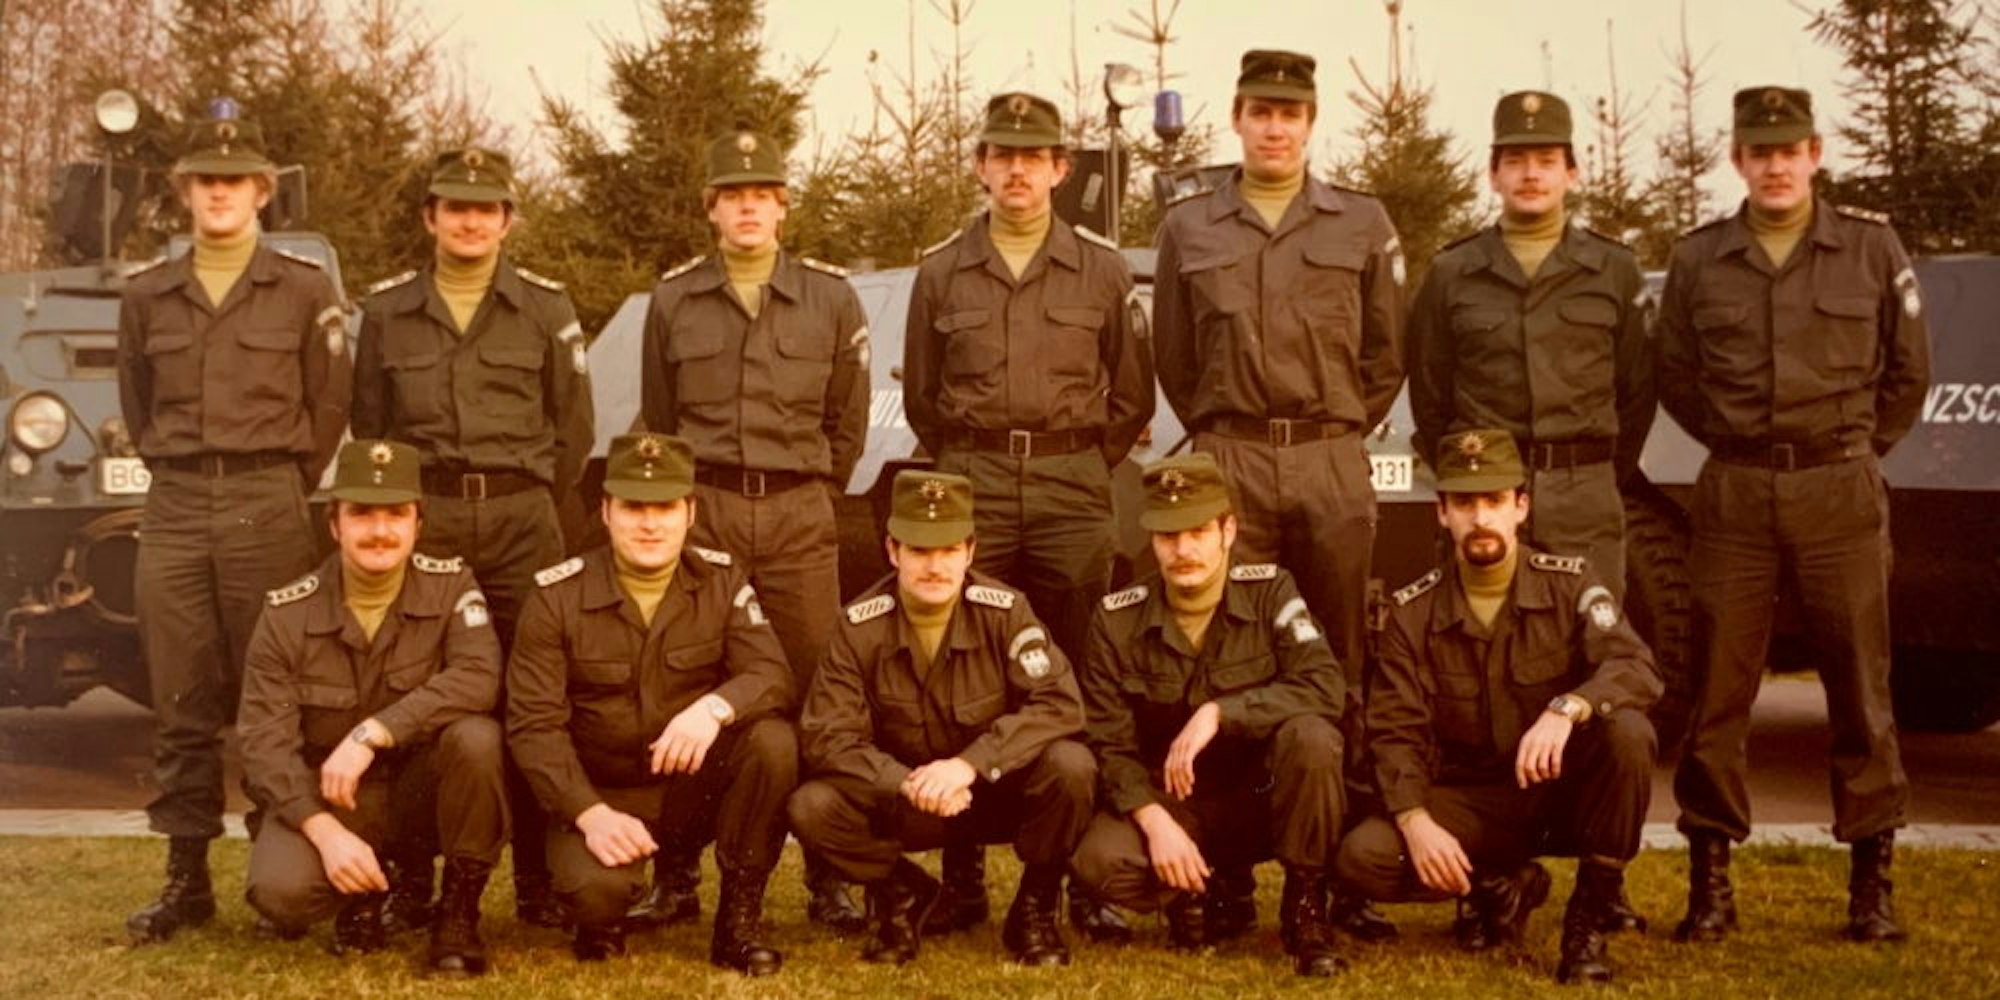 Die Bundesgrenzschützer posierten während ihrer Ausbildung in Uniform für ein Gruppenfoto.